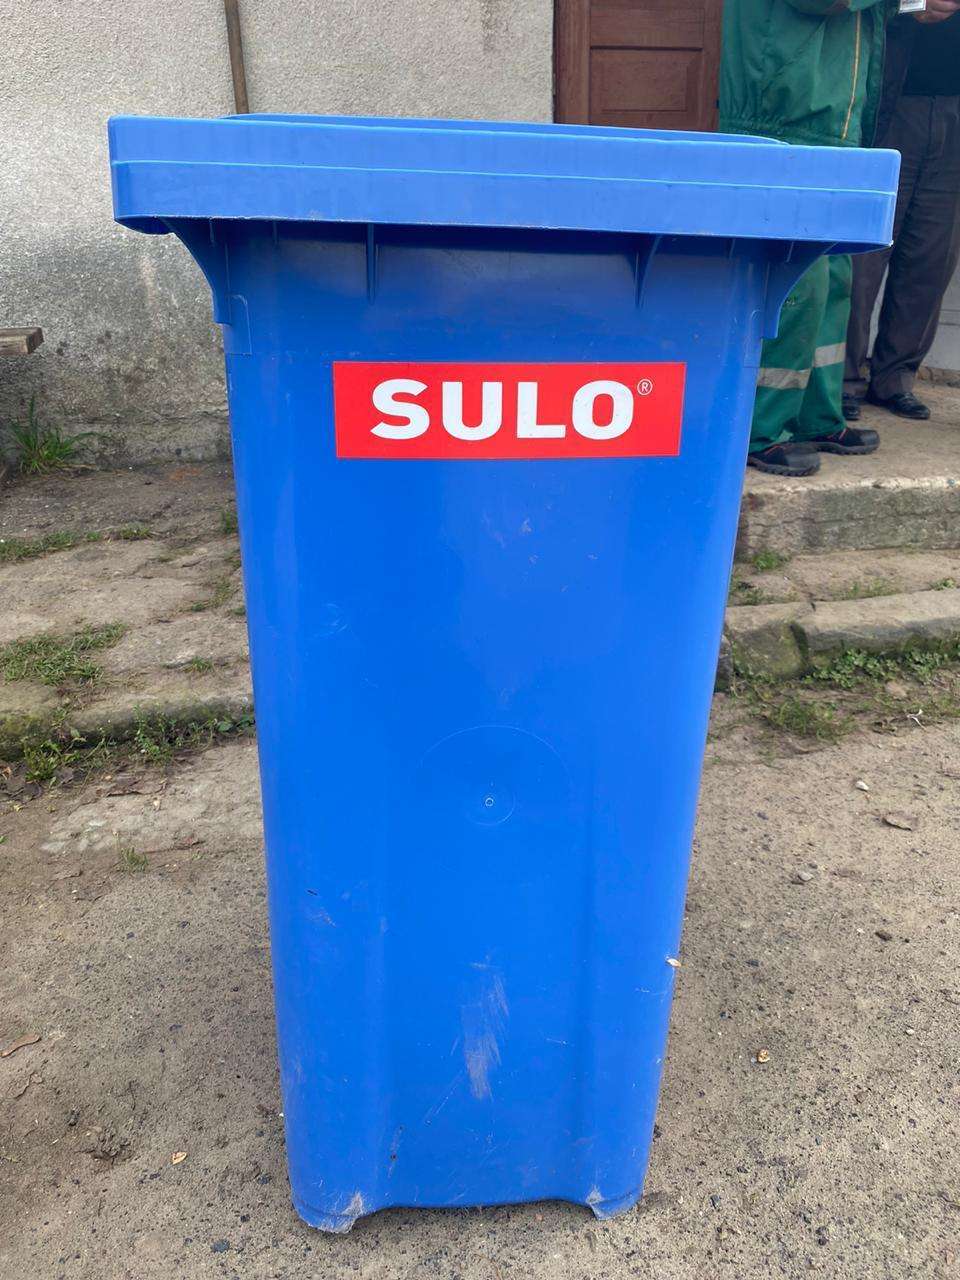 У Яворівському районі чоловік вкрав 20 сміттєвих контейнерів, щоб продати (фото)